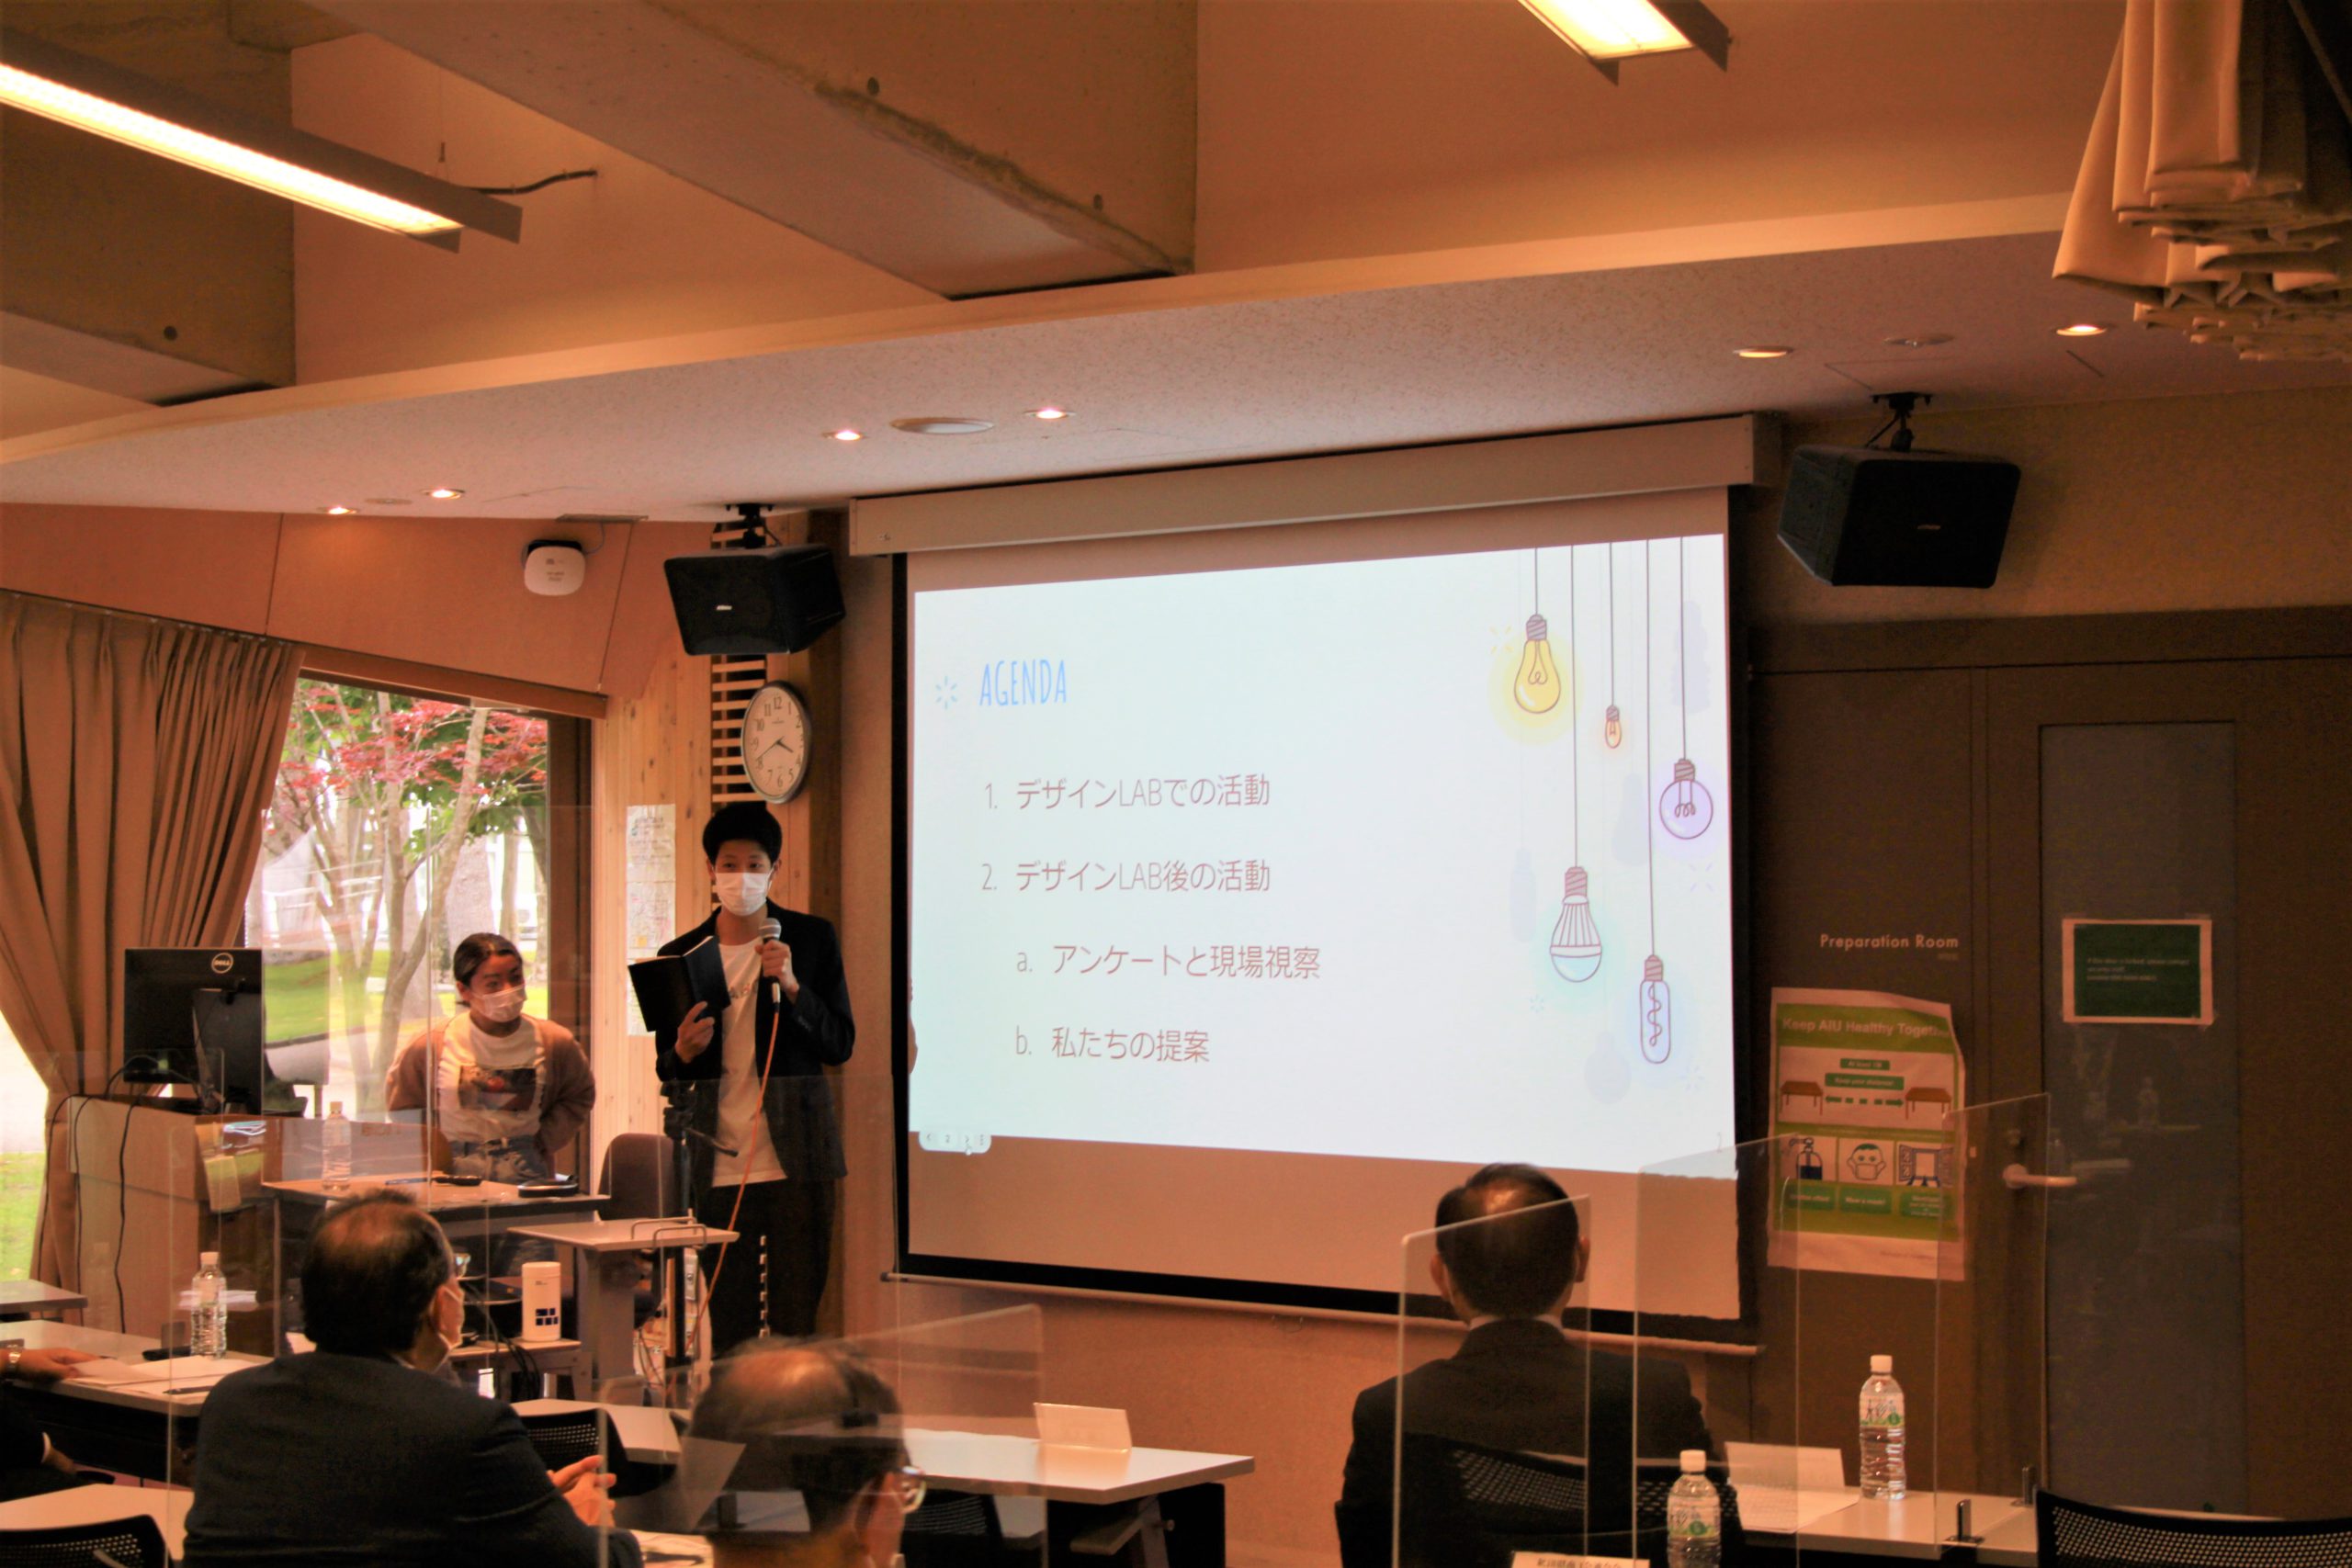 AIUデザインLABの発表をする中島さんと松村さん